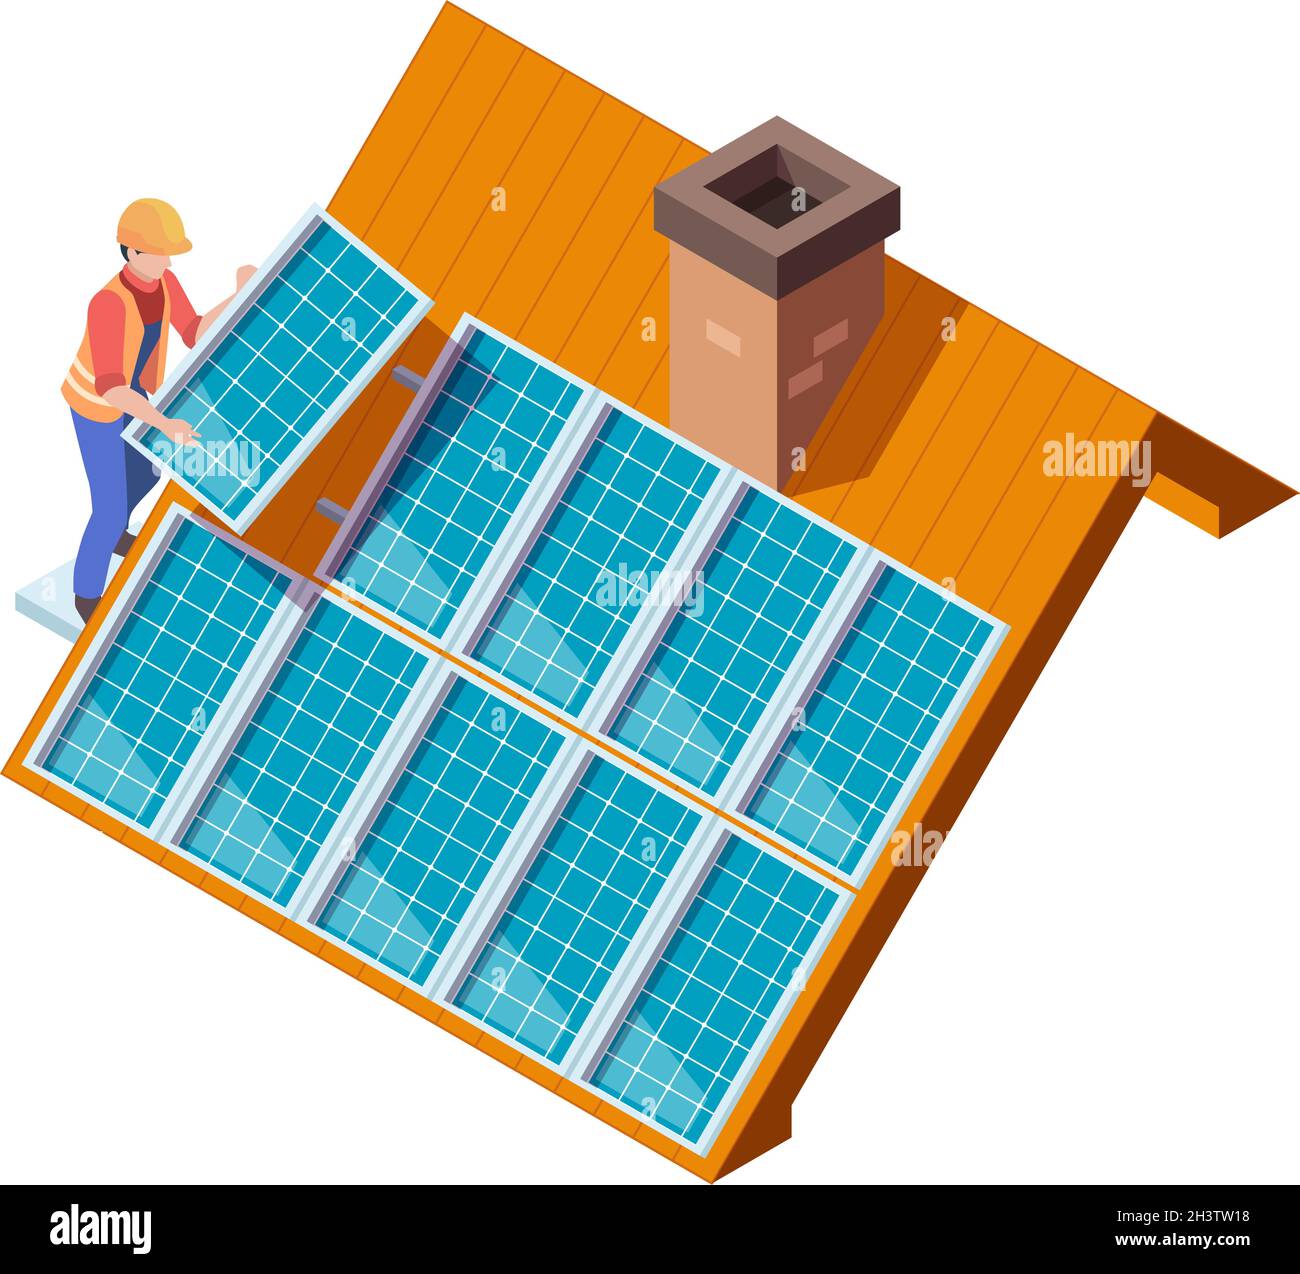 Photovoltaik Auf Dach Aufmerksamkeit Aufkleber Stock Vektor Art und mehr  Bilder von Alarm - Alarm, Aufkleber, Batterie - iStock